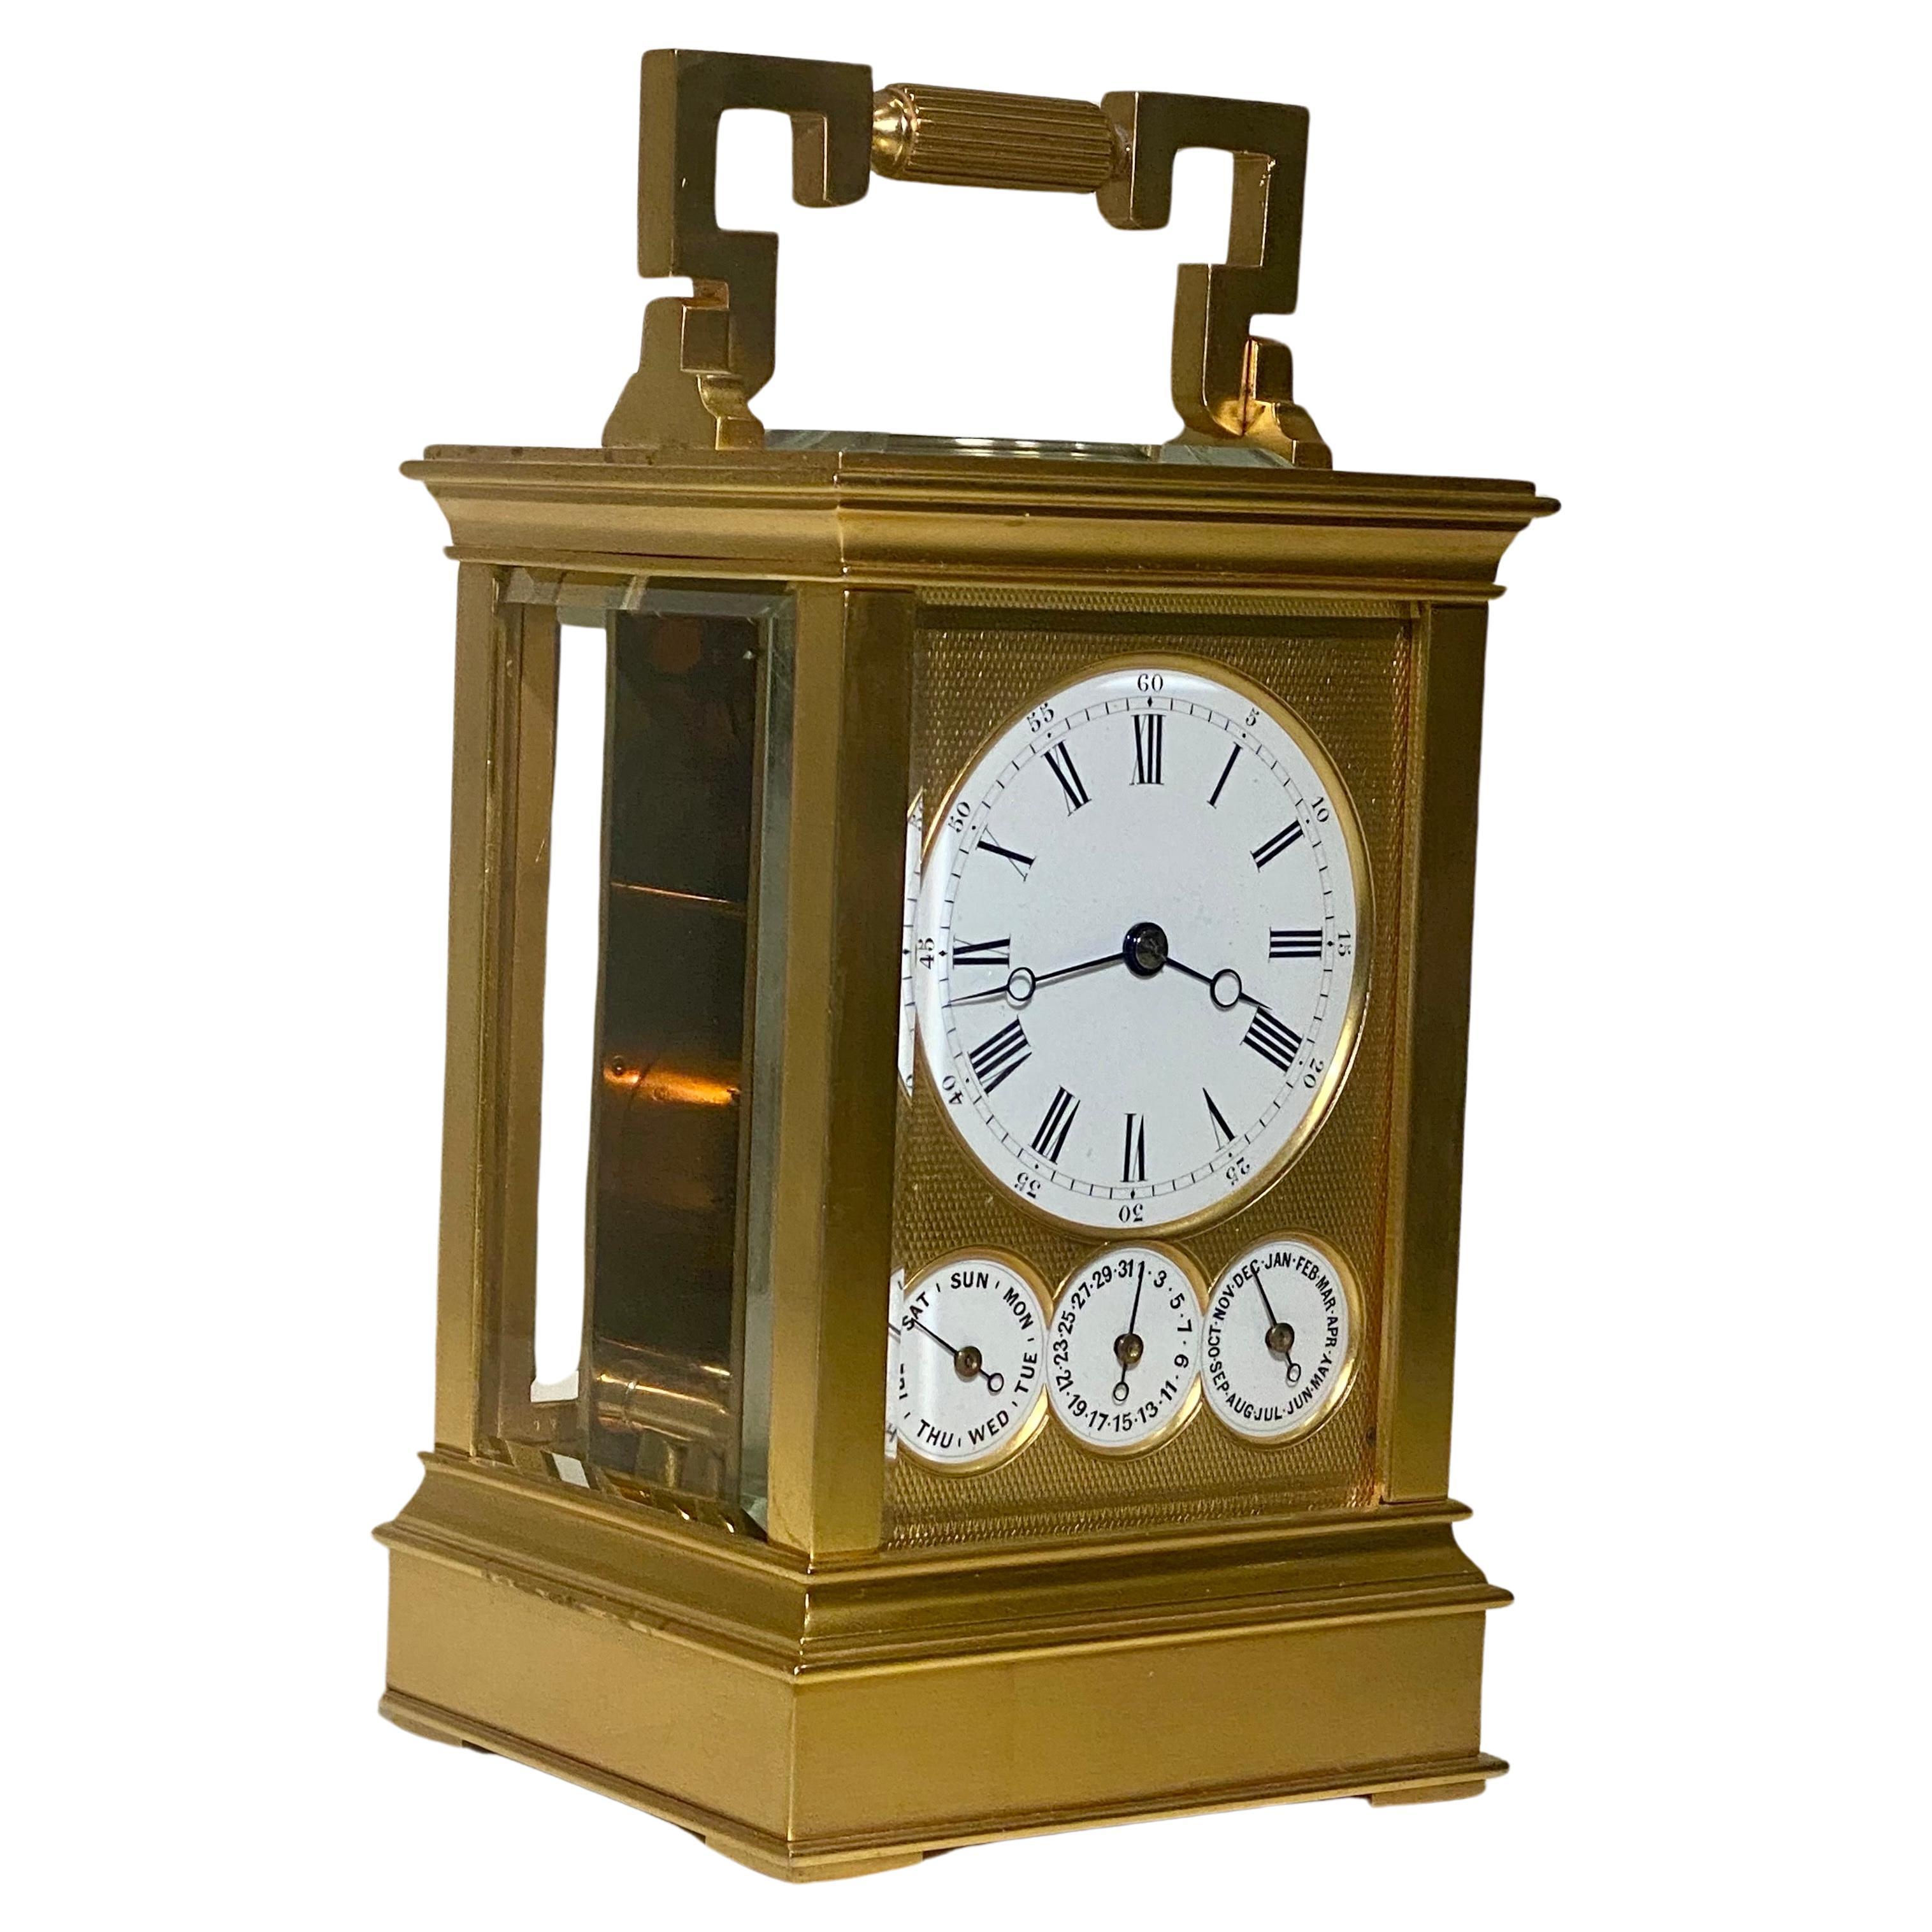 A Drocourt Nr. 14993: Kutschenuhr  rundes Emailzifferblatt vor einer vergoldeten Maske, das Uhrwerk mit Stempel und Nummer von Drocourt
Wir freuen uns, diese schöne und sehr seltene Kutschenuhr aus französischer Produktion aus dem 3. Quartal des 19.